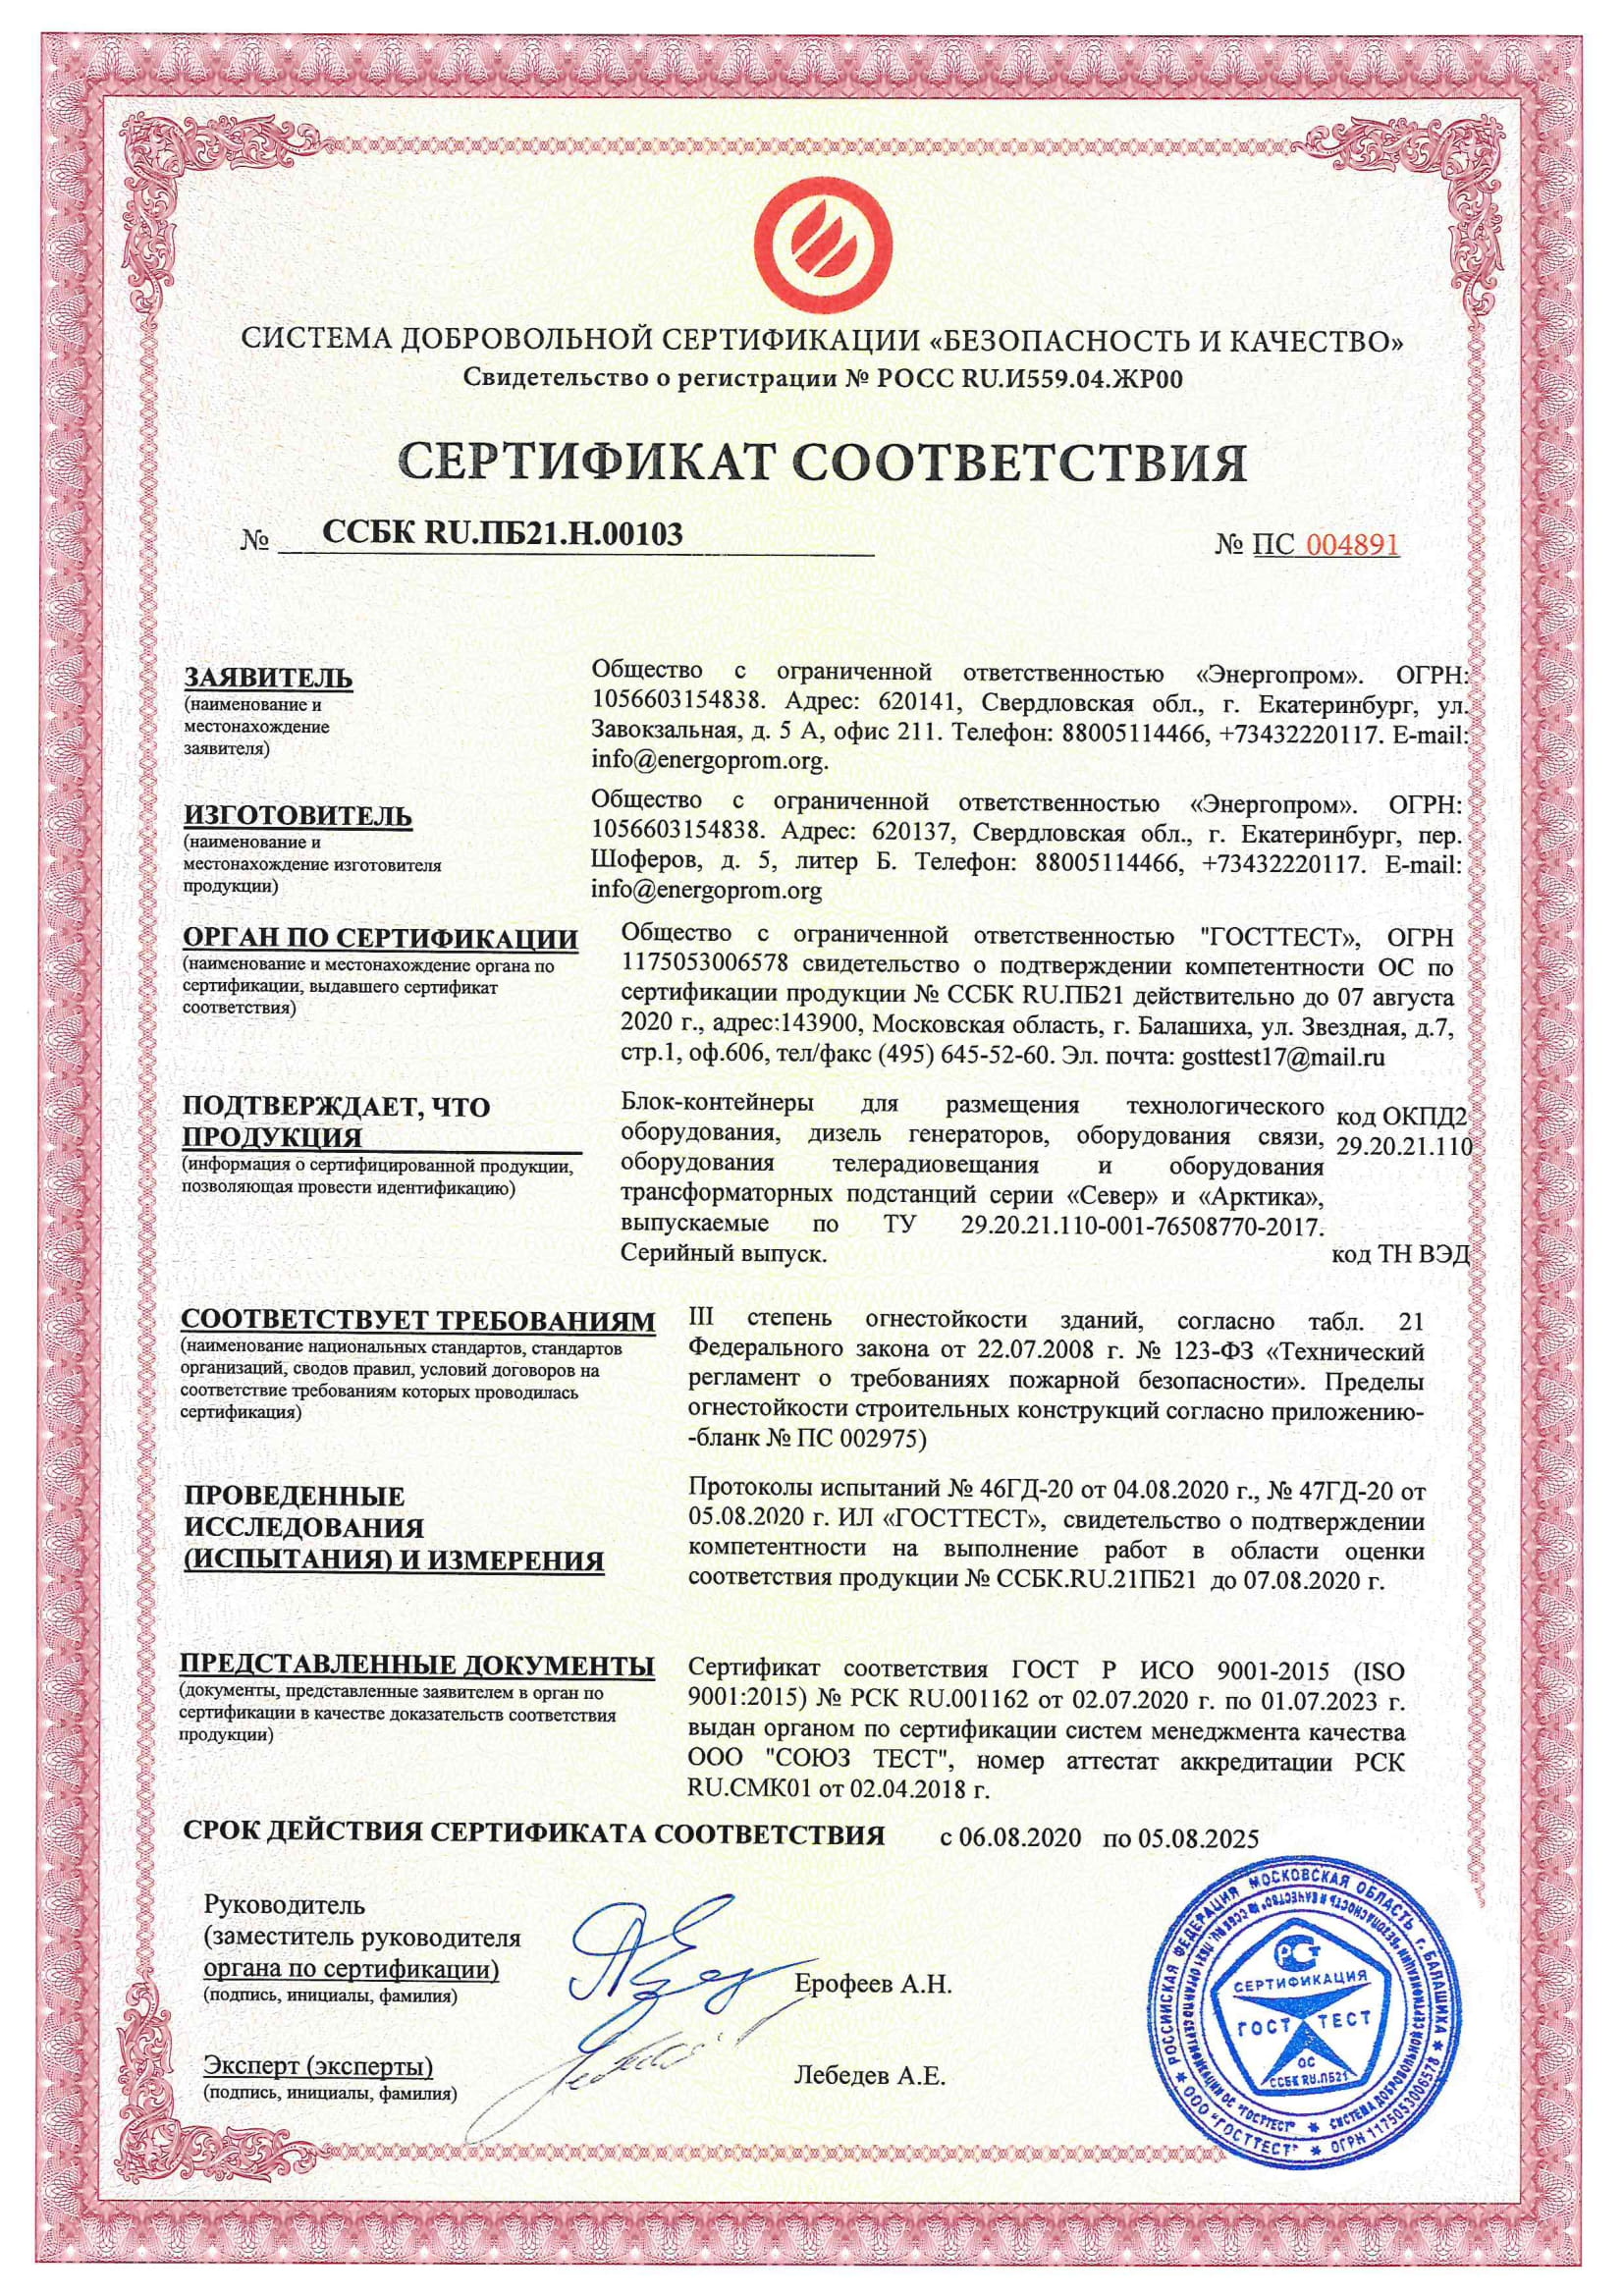 Сертификат соответствия огнестойкости №ПС 004891